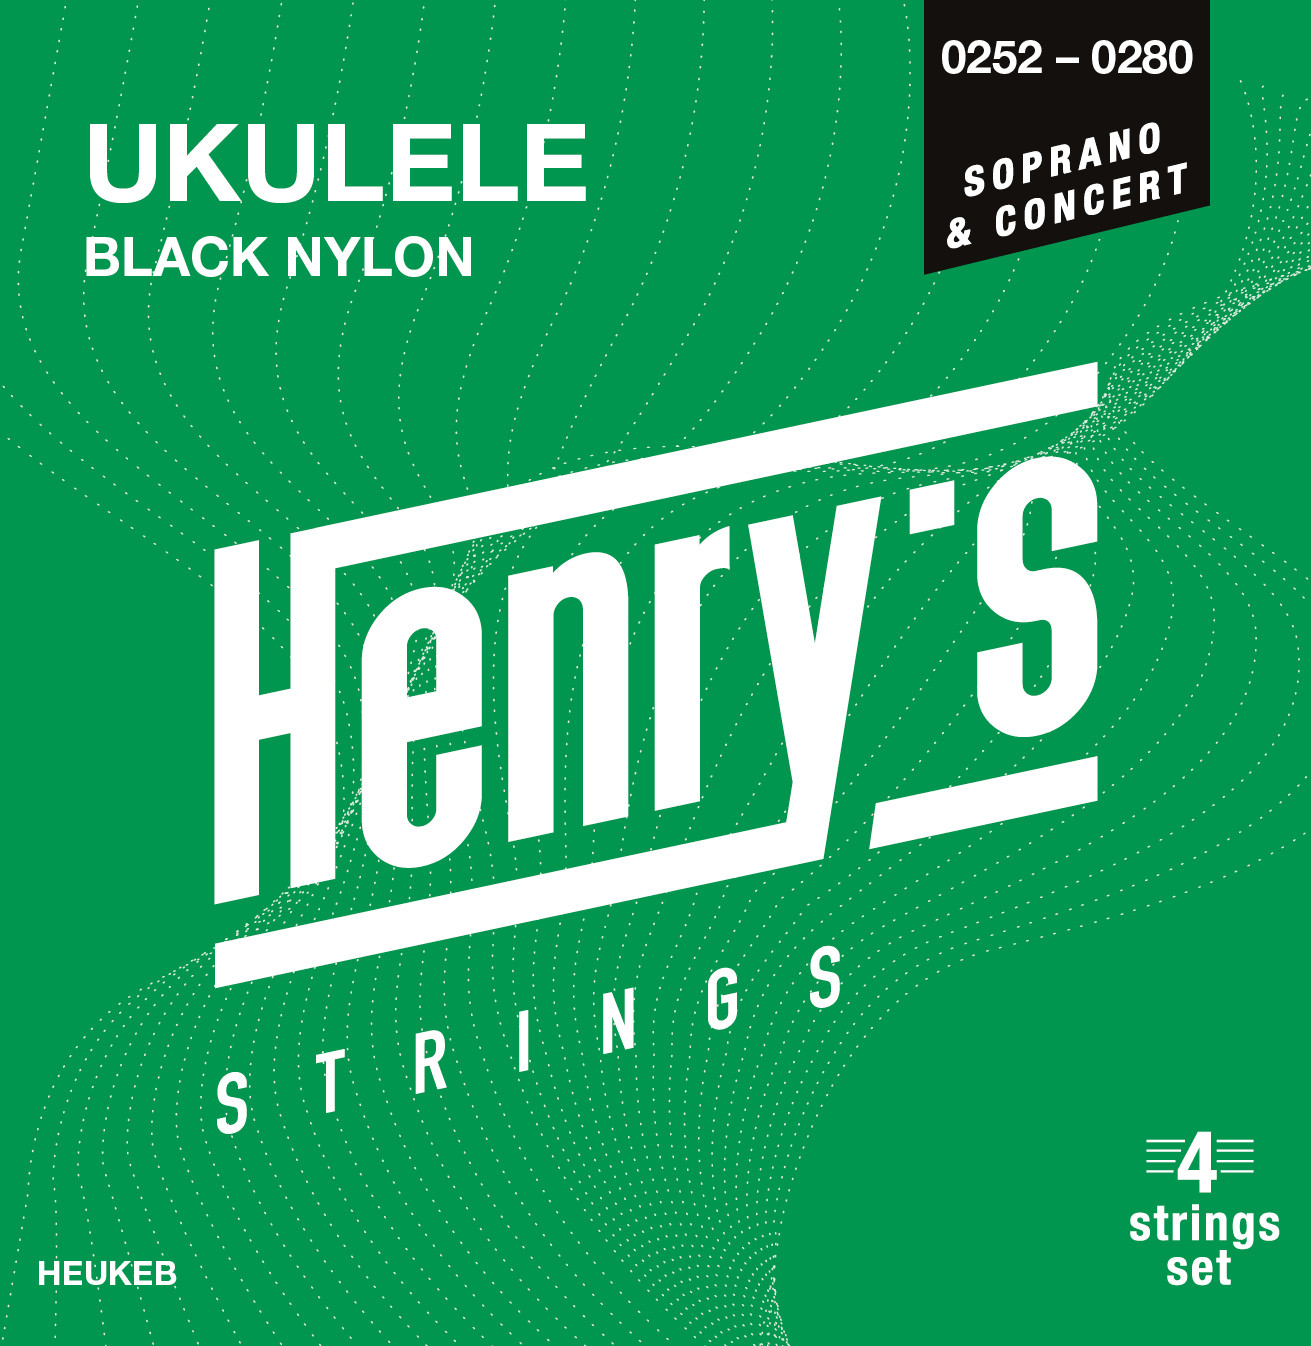 Hlavní obrázek Sopránové HENRY’S HEUKEB Black Nylon - UKULELE Soprano / Concert